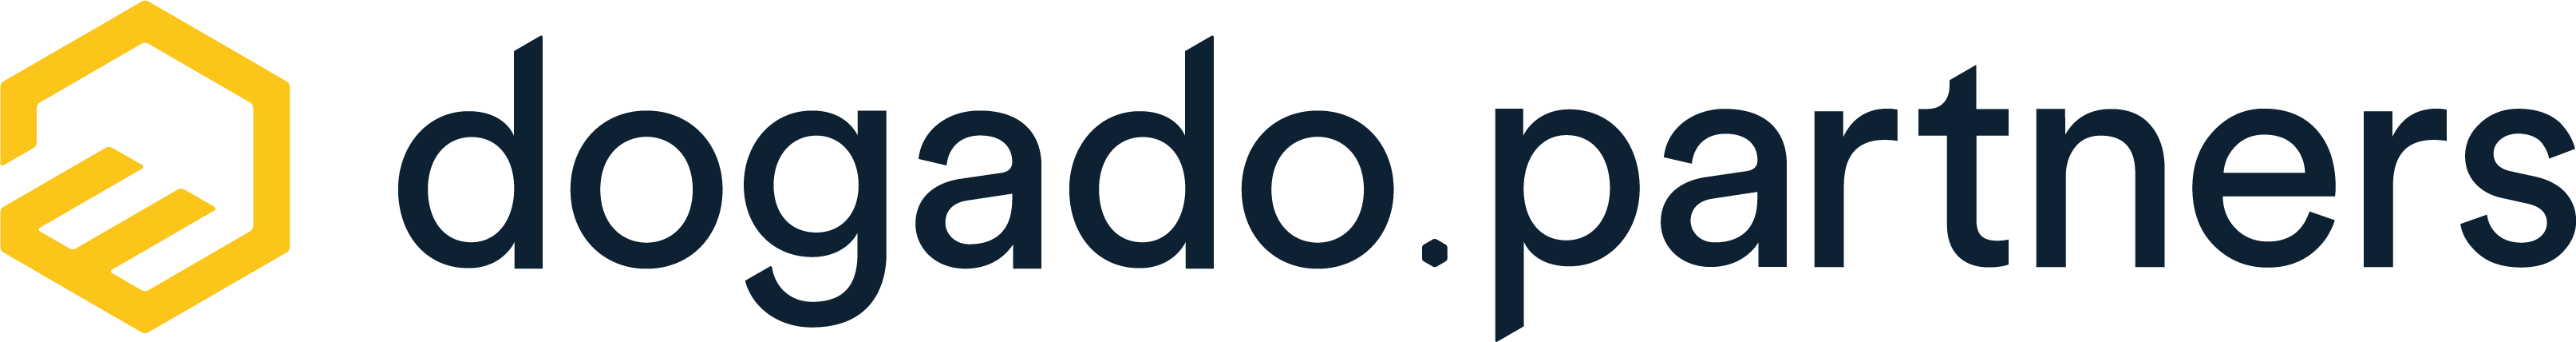 evernine-dogado-partners-logo